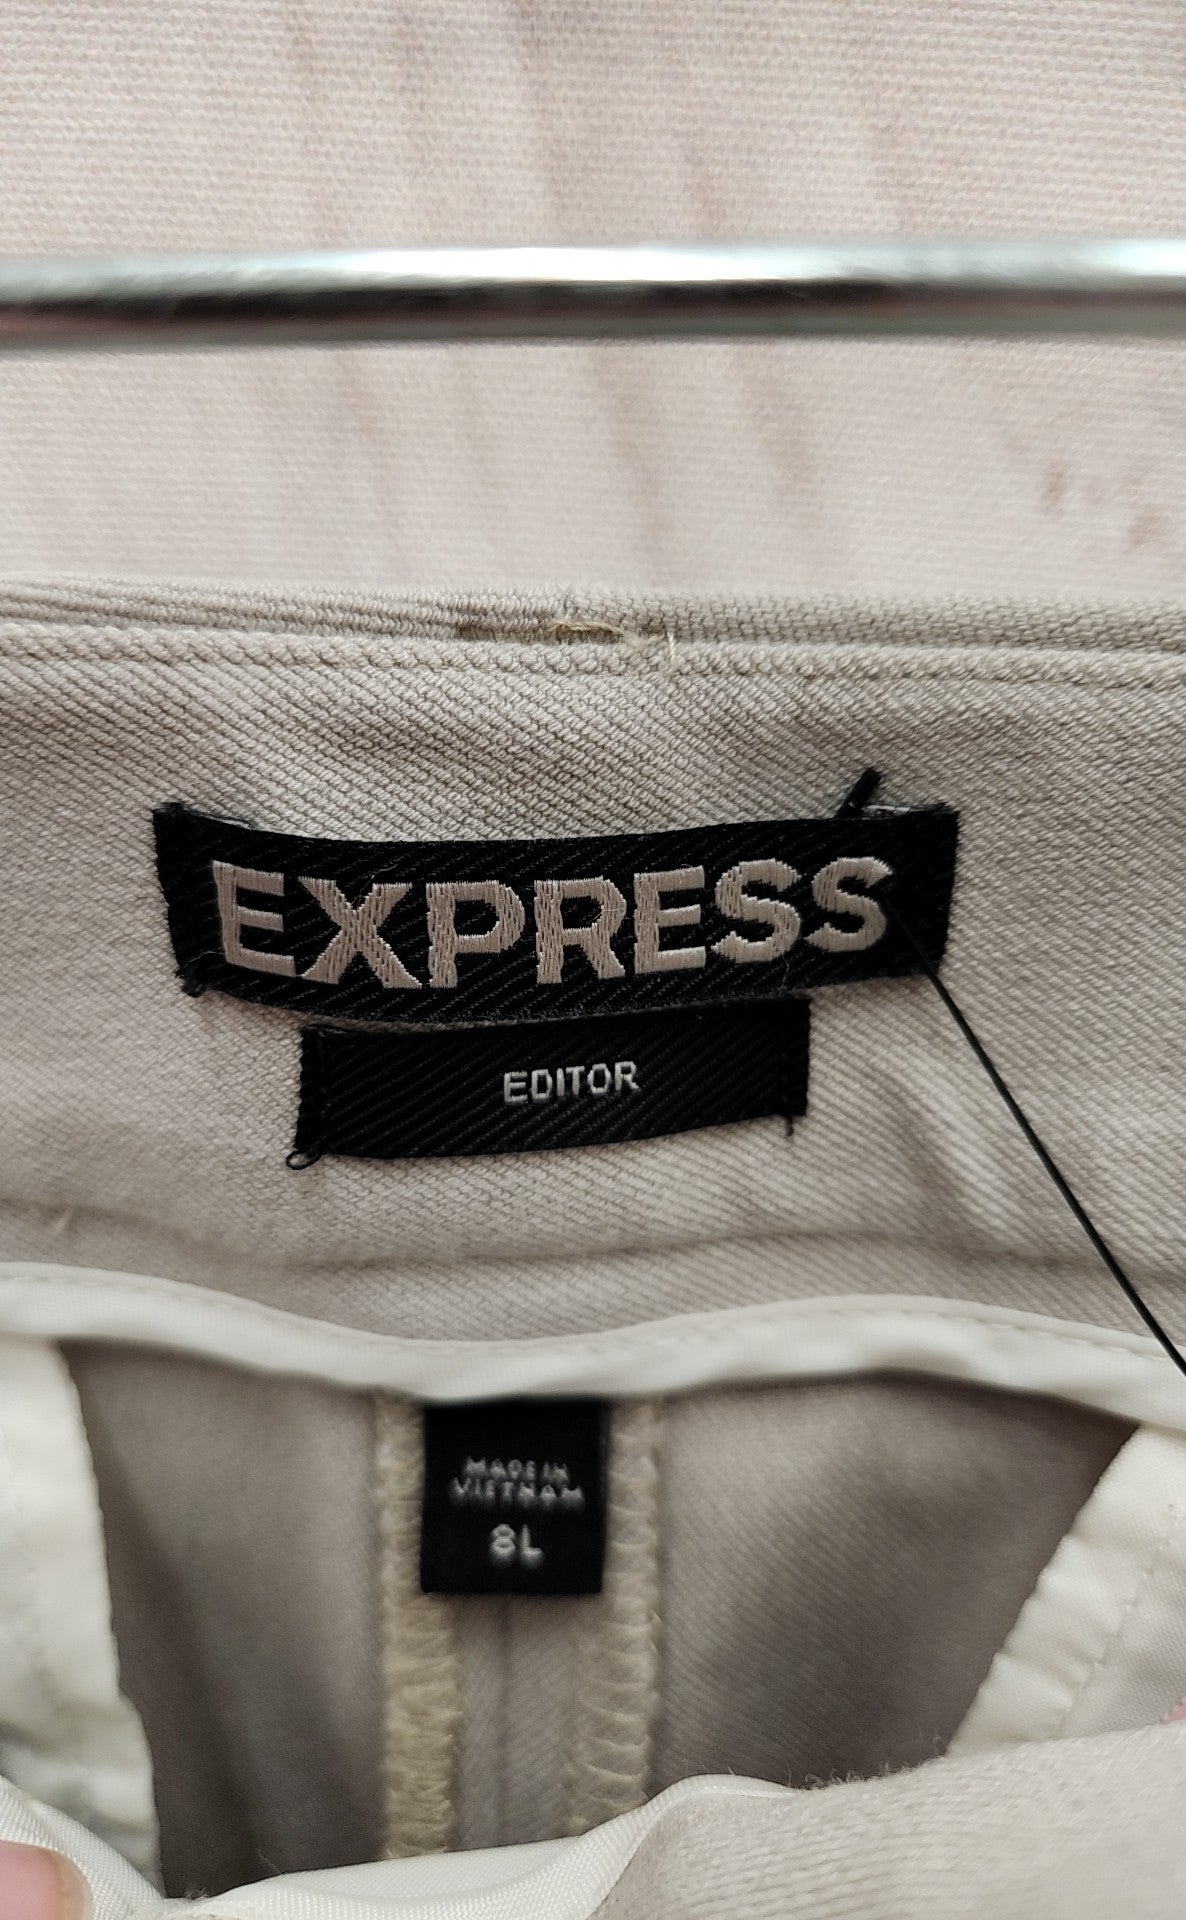 Express Women's Size 8 Long Beige Pants